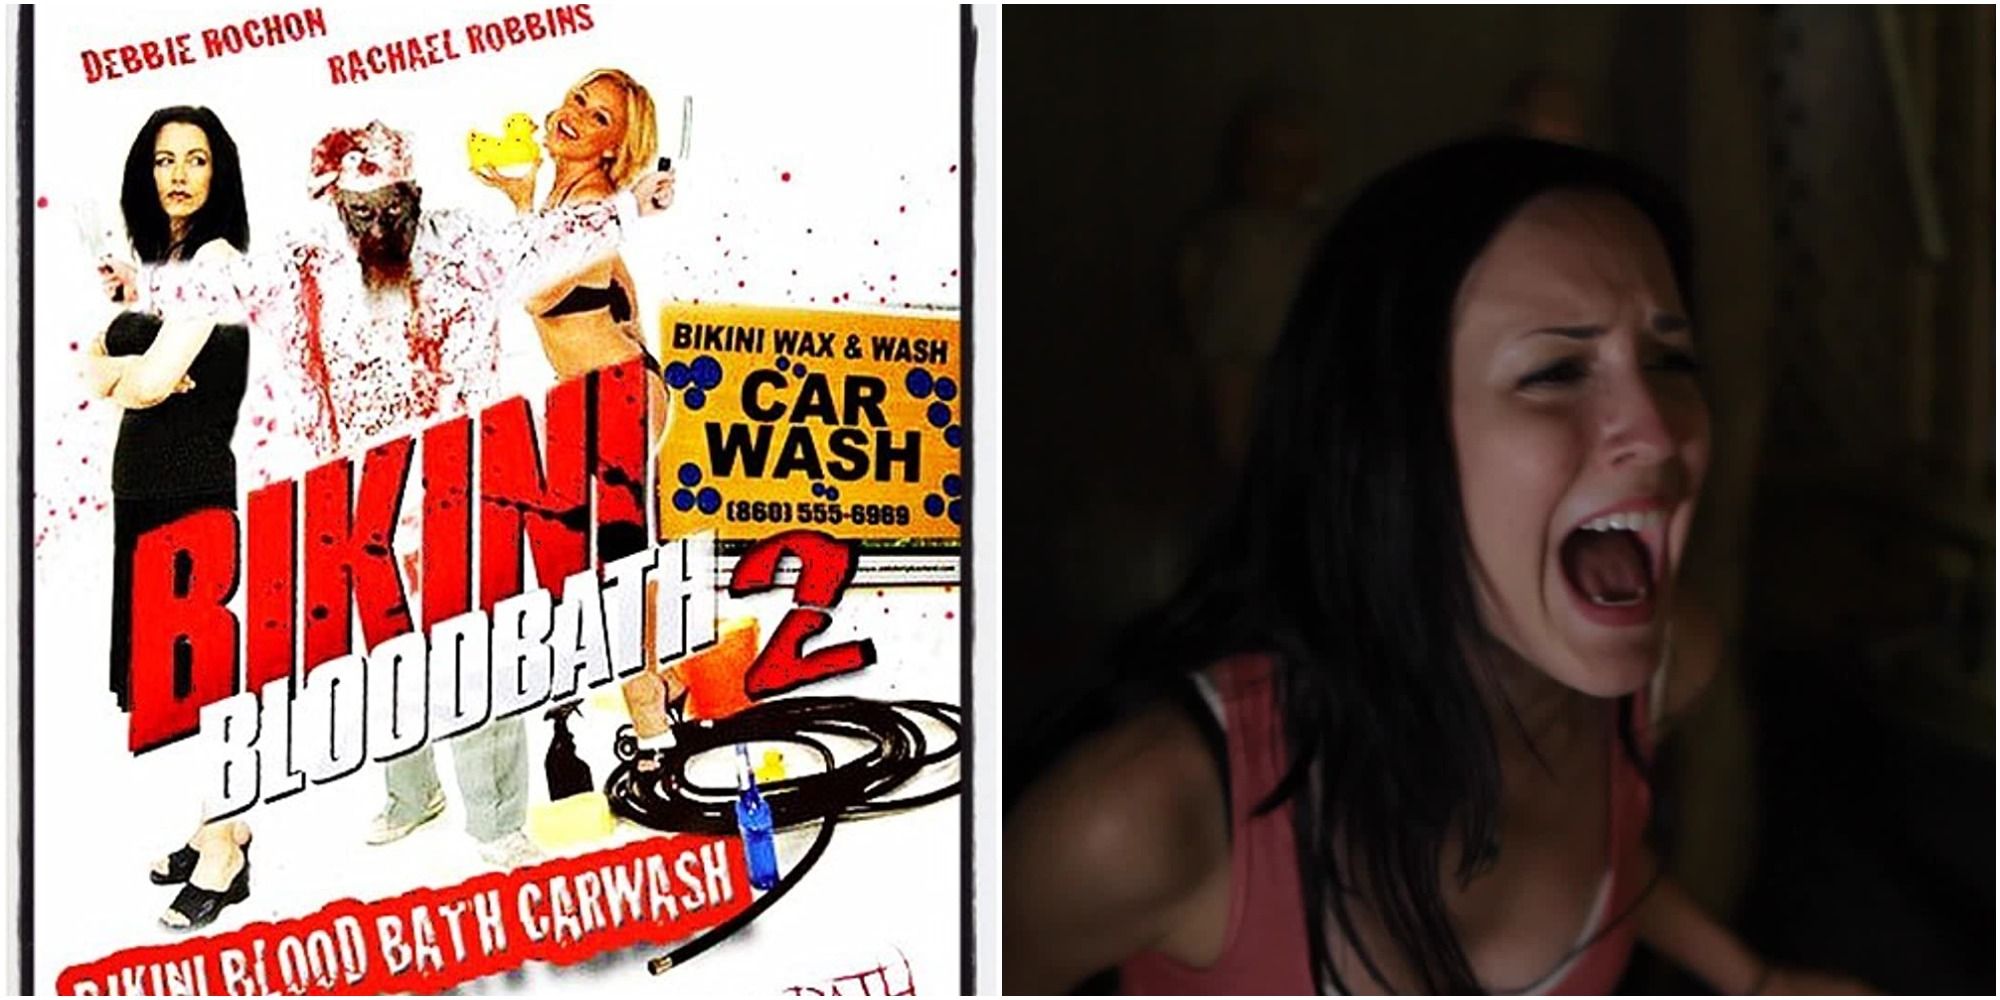 Bikini Bloodbath Car Wash scenes